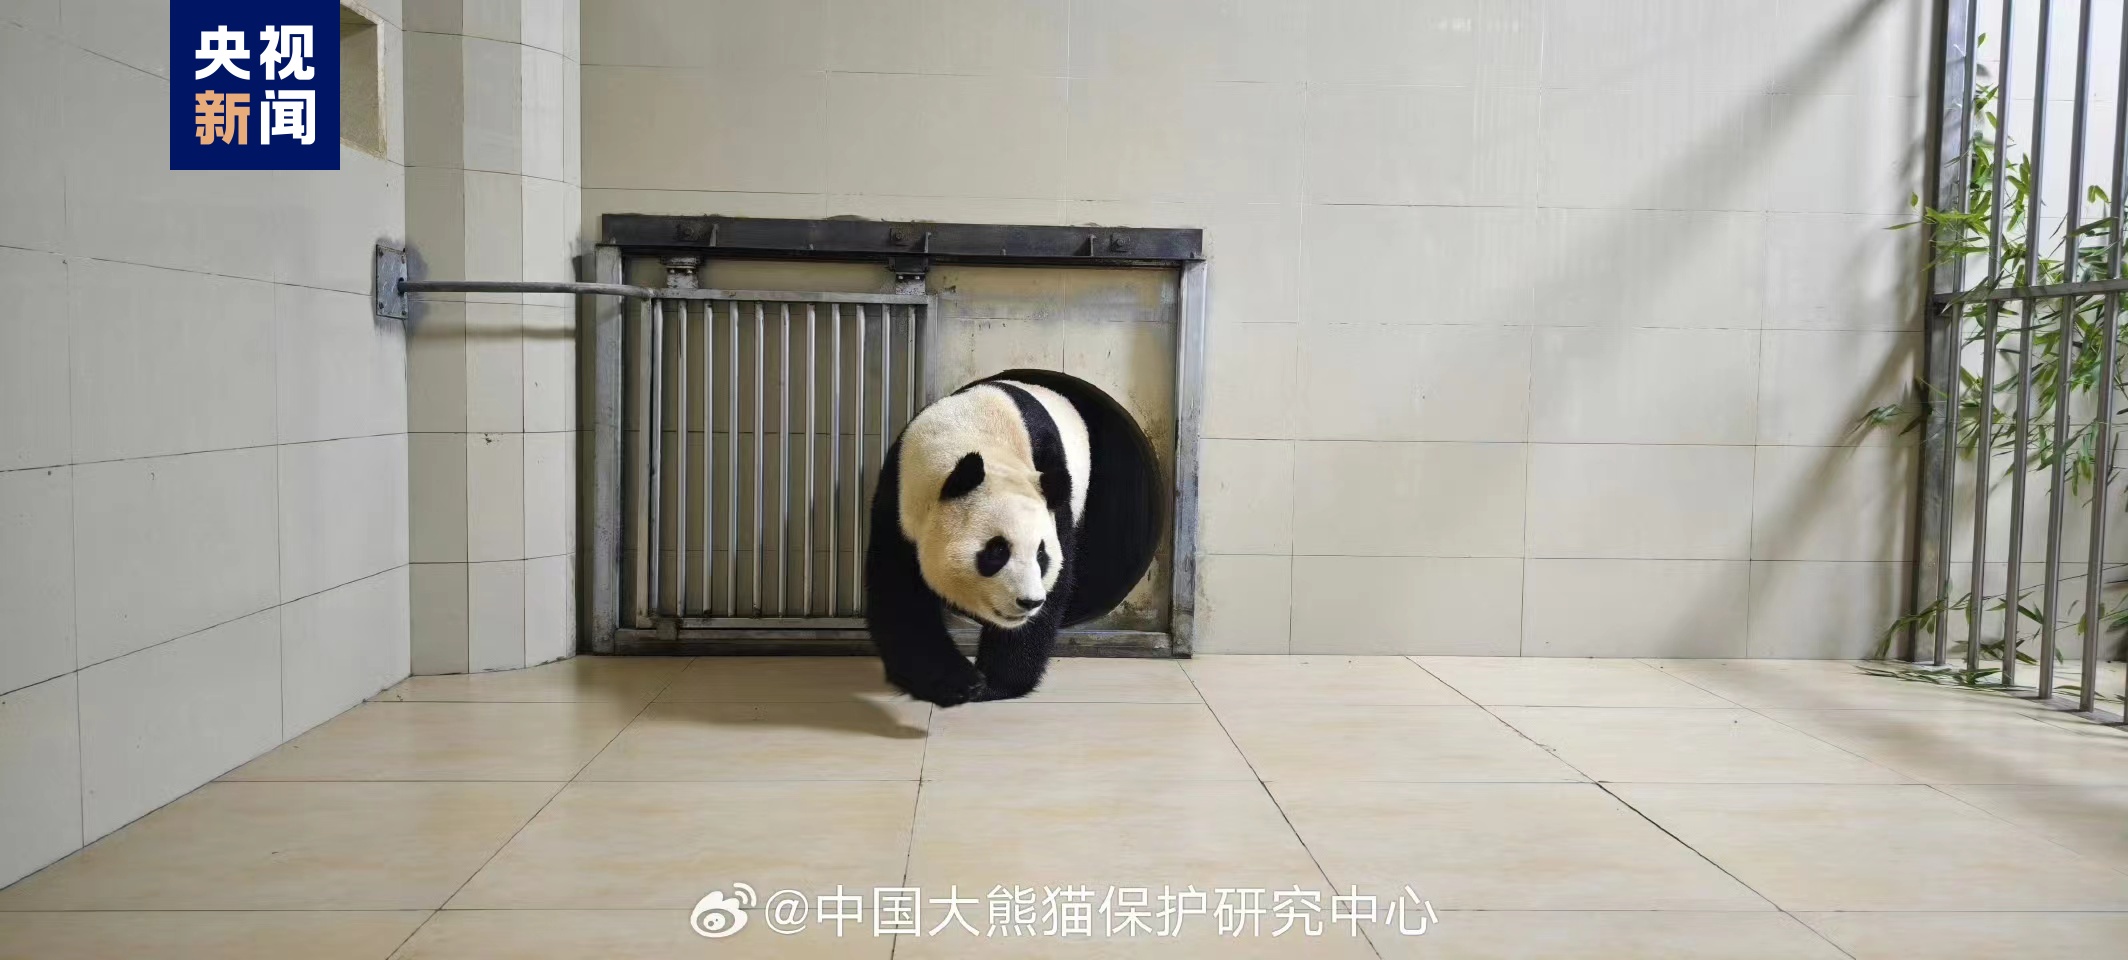 大熊猫“福宝”已凯旋抵家 形态优异